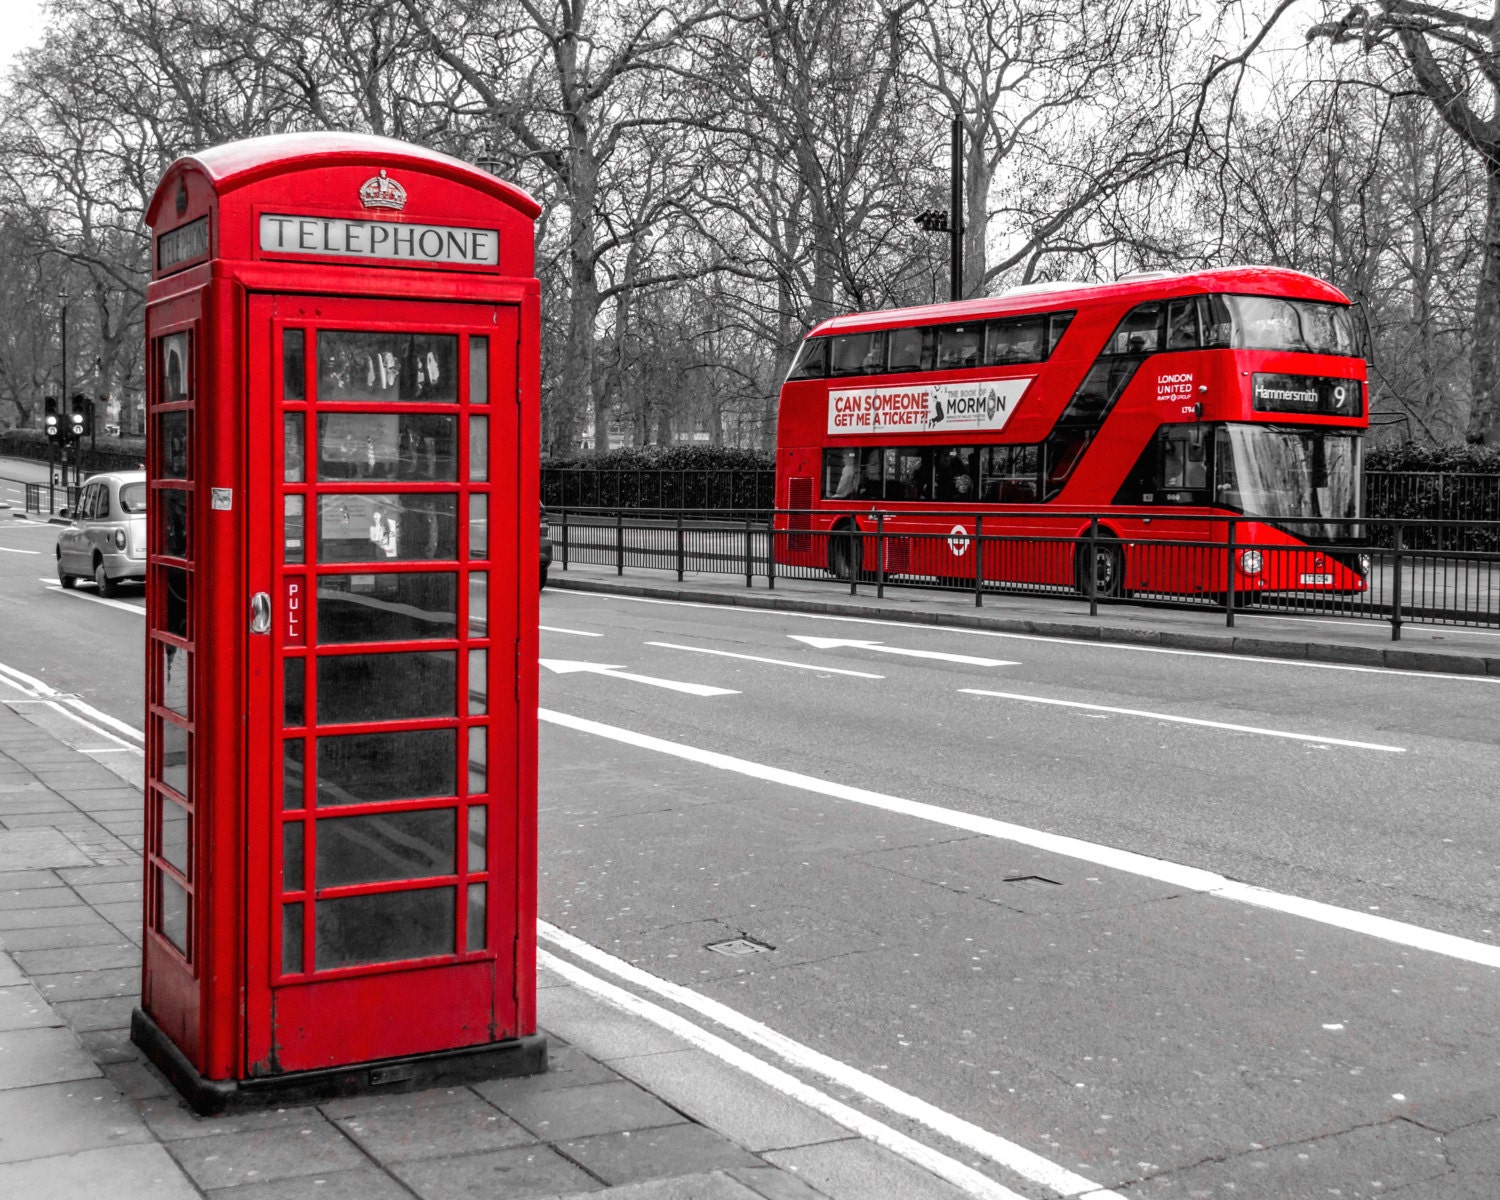 Výsledek obrázku pro phone booth london